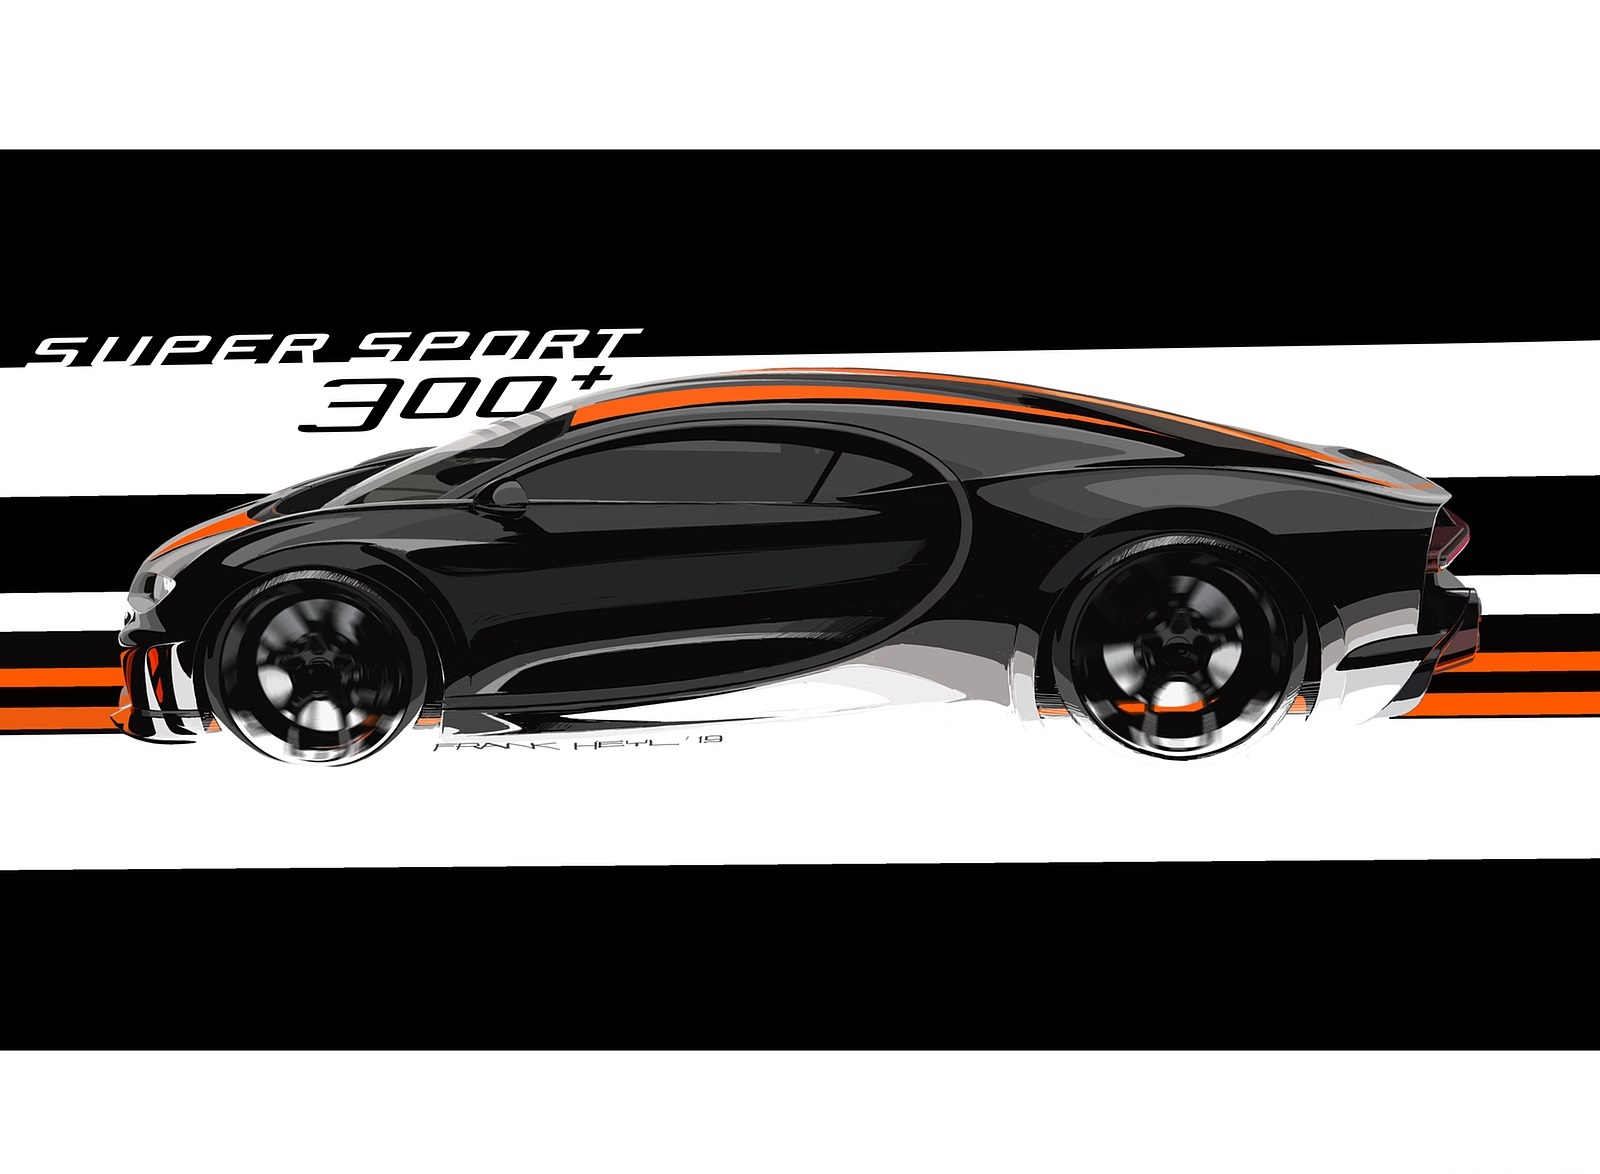 2021 Bugatti Chiron Super Sport 300+ Design Sketch Wallpapers #18 of 31